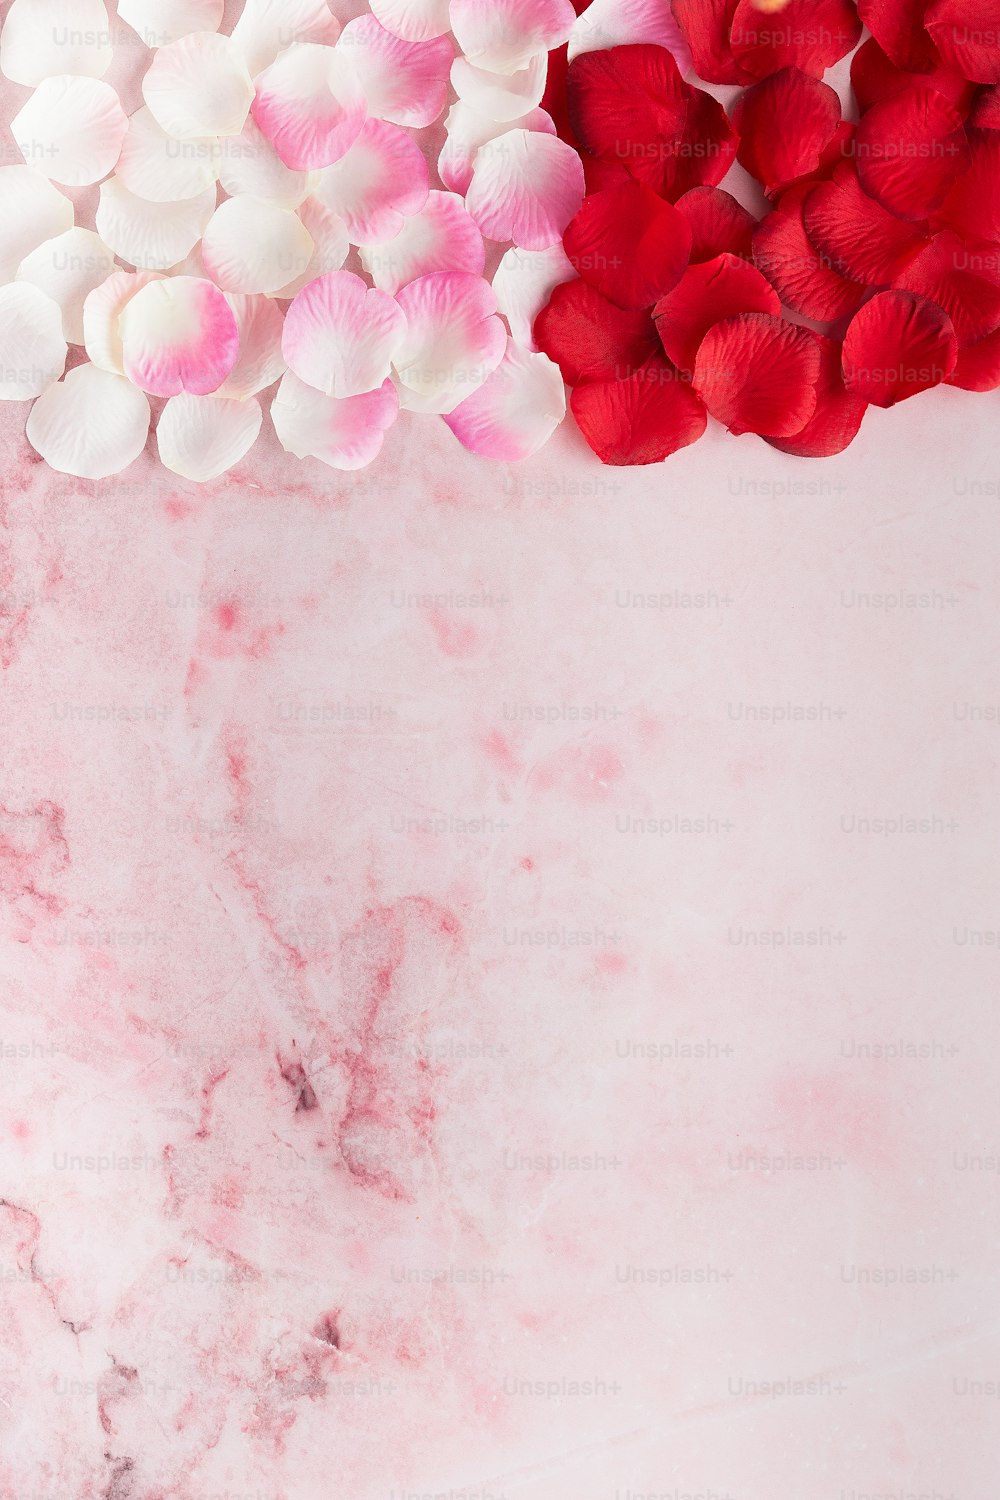 uno sfondo di marmo rosa con fiori rossi e bianchi